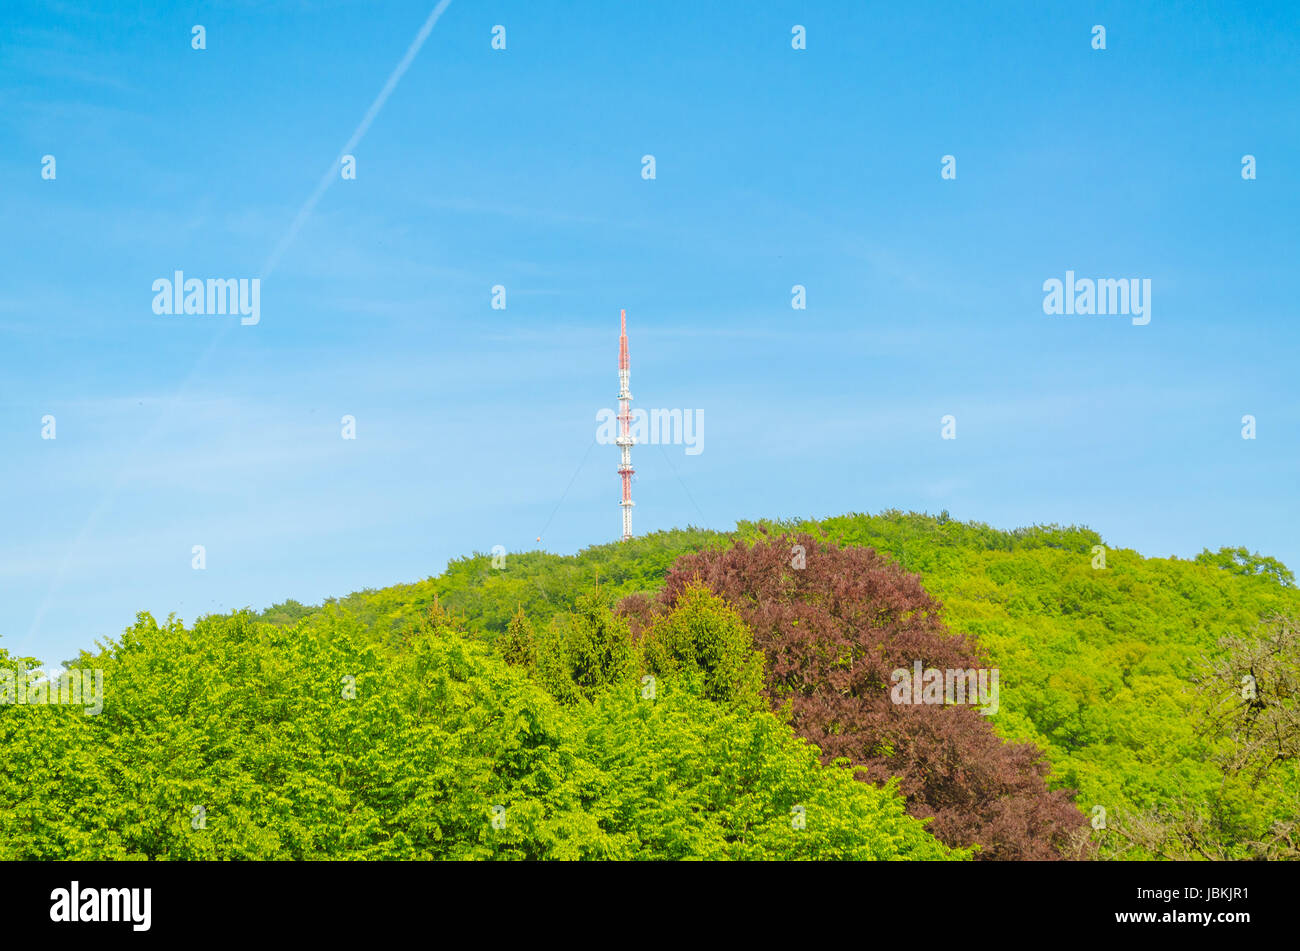 Rundfunksendemast auf einem Waldhügel vor blauem Himmel Stock Photo